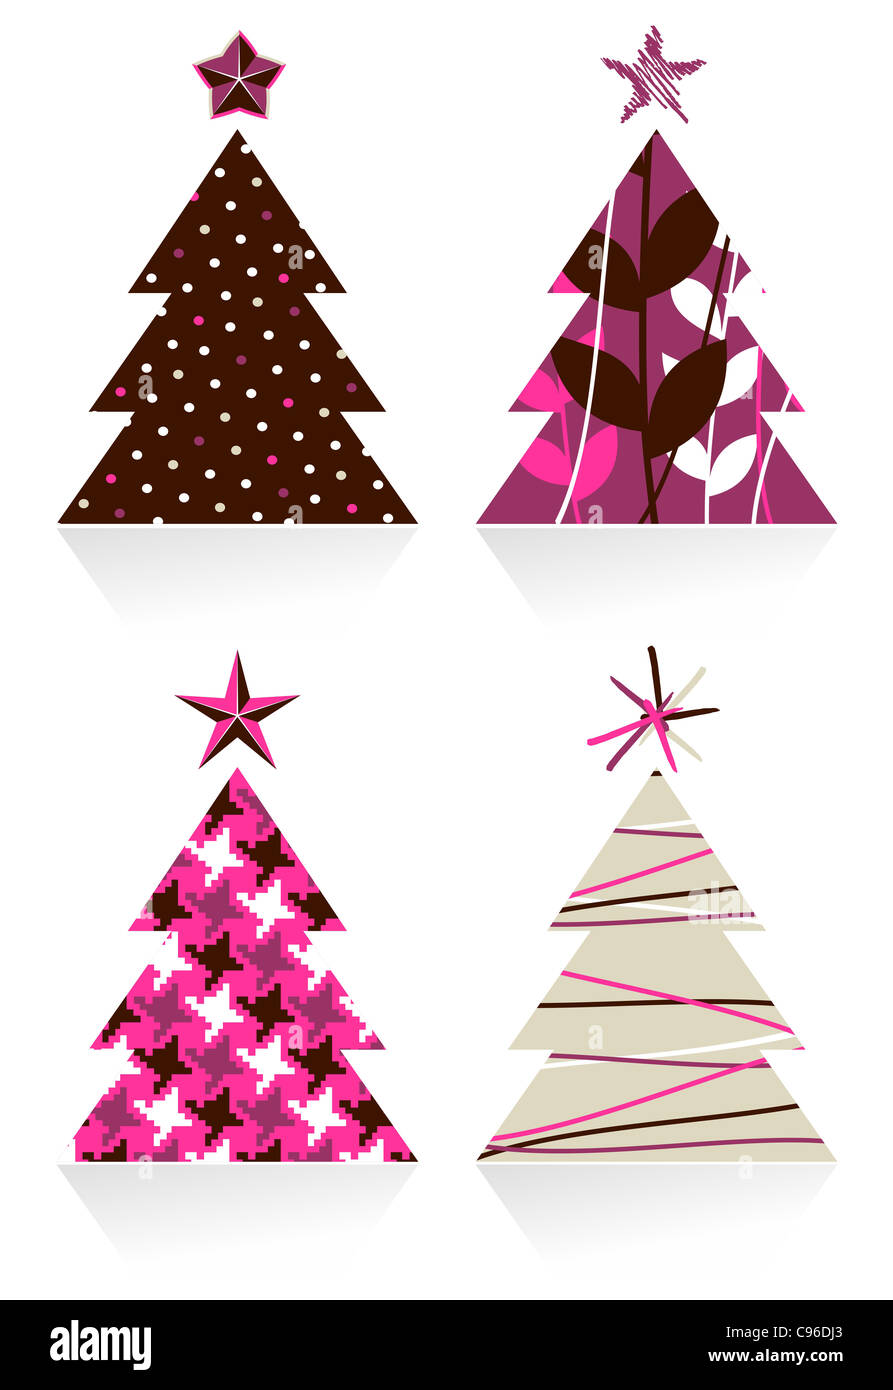 Weihnachtsbäume mit Texturen mit einem Stern auf der Spitze gemacht. Vektor-Datei zur Verfügung. Stockfoto